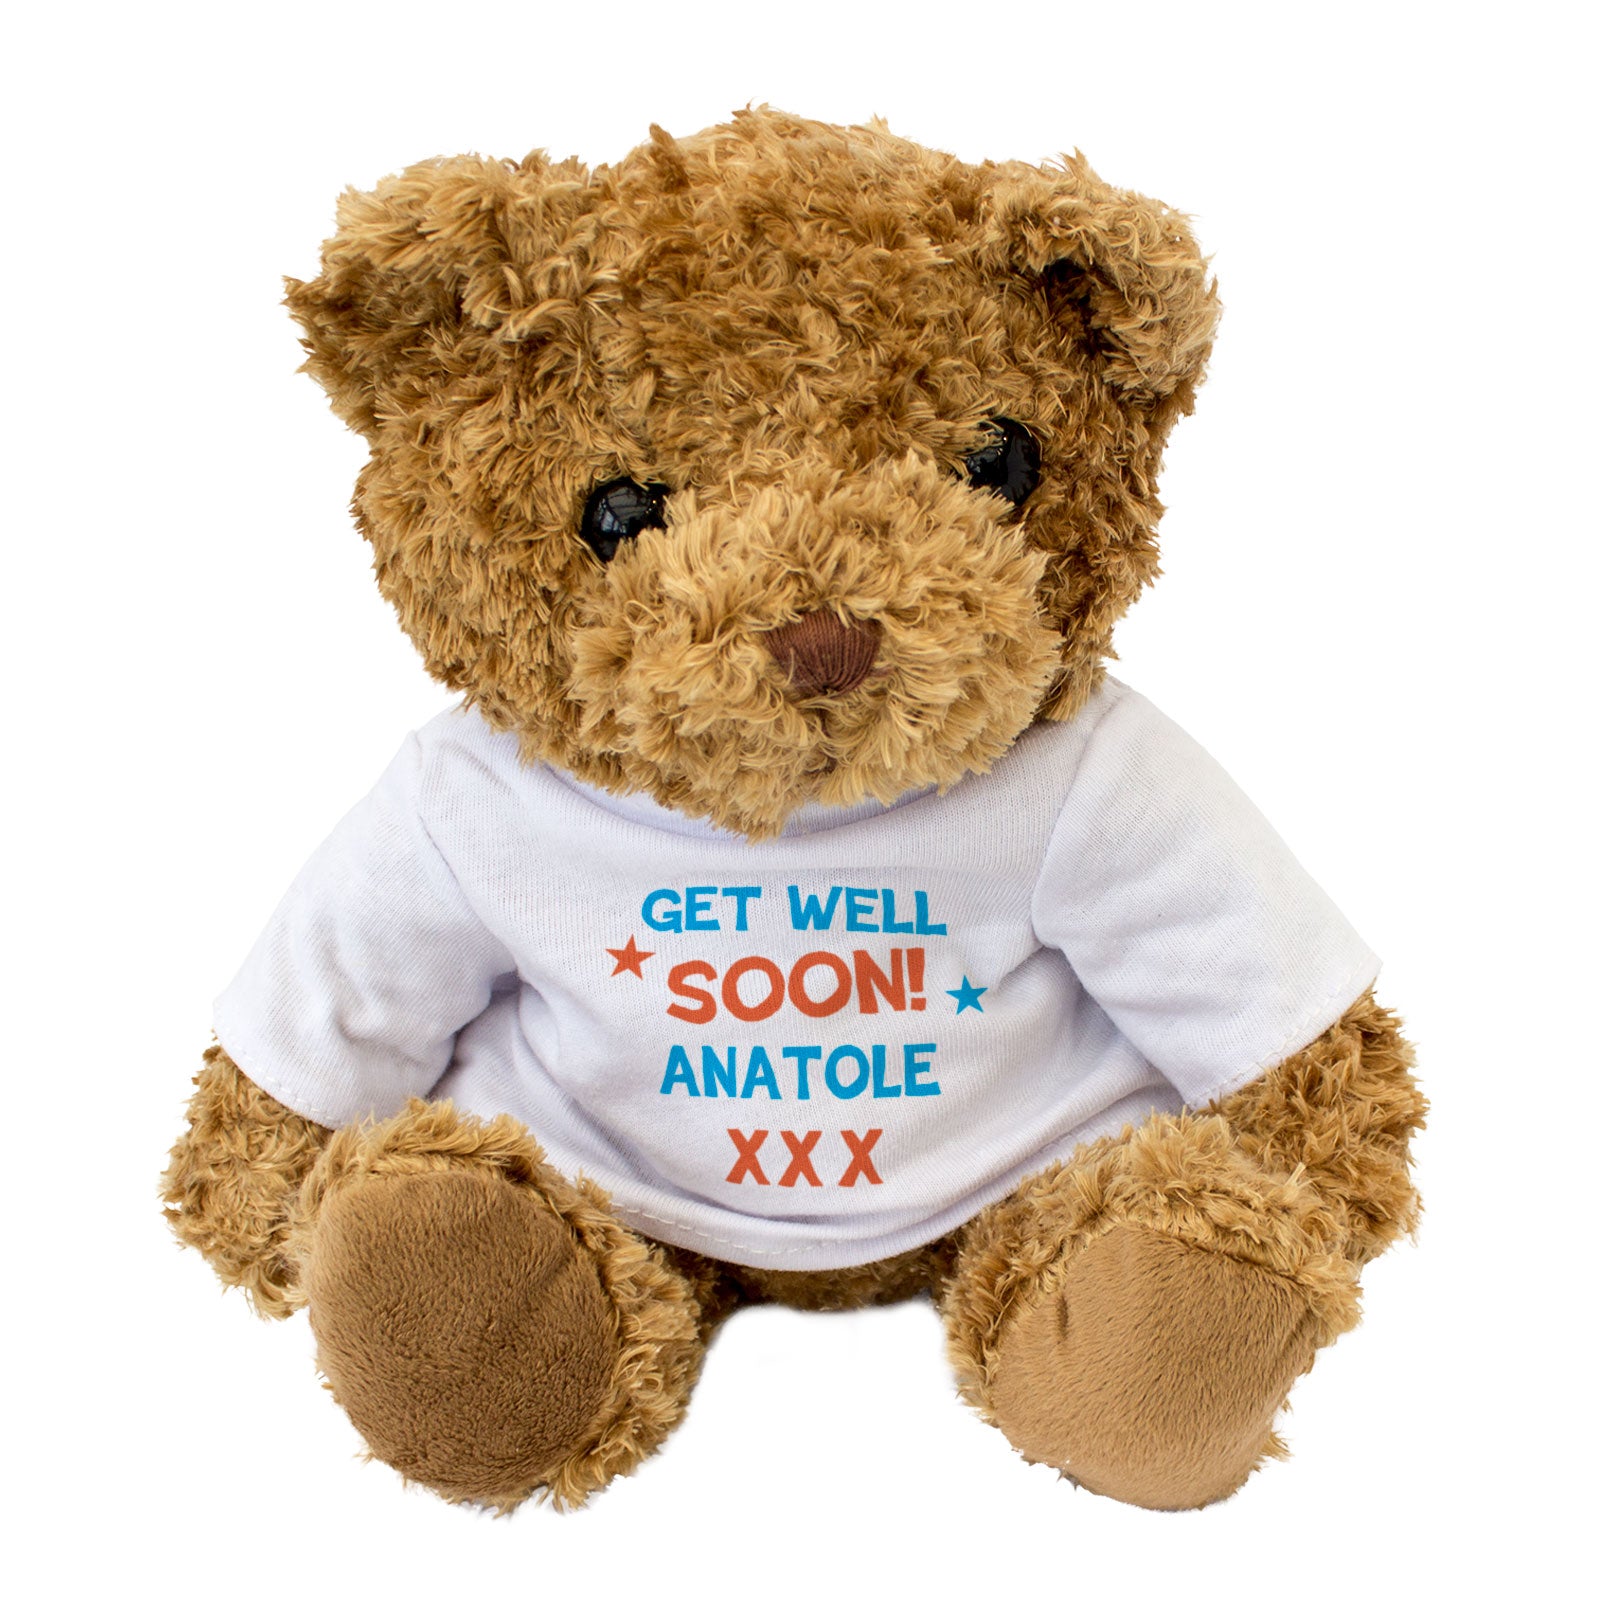 Get Well Soon Anatole - Teddy Bear